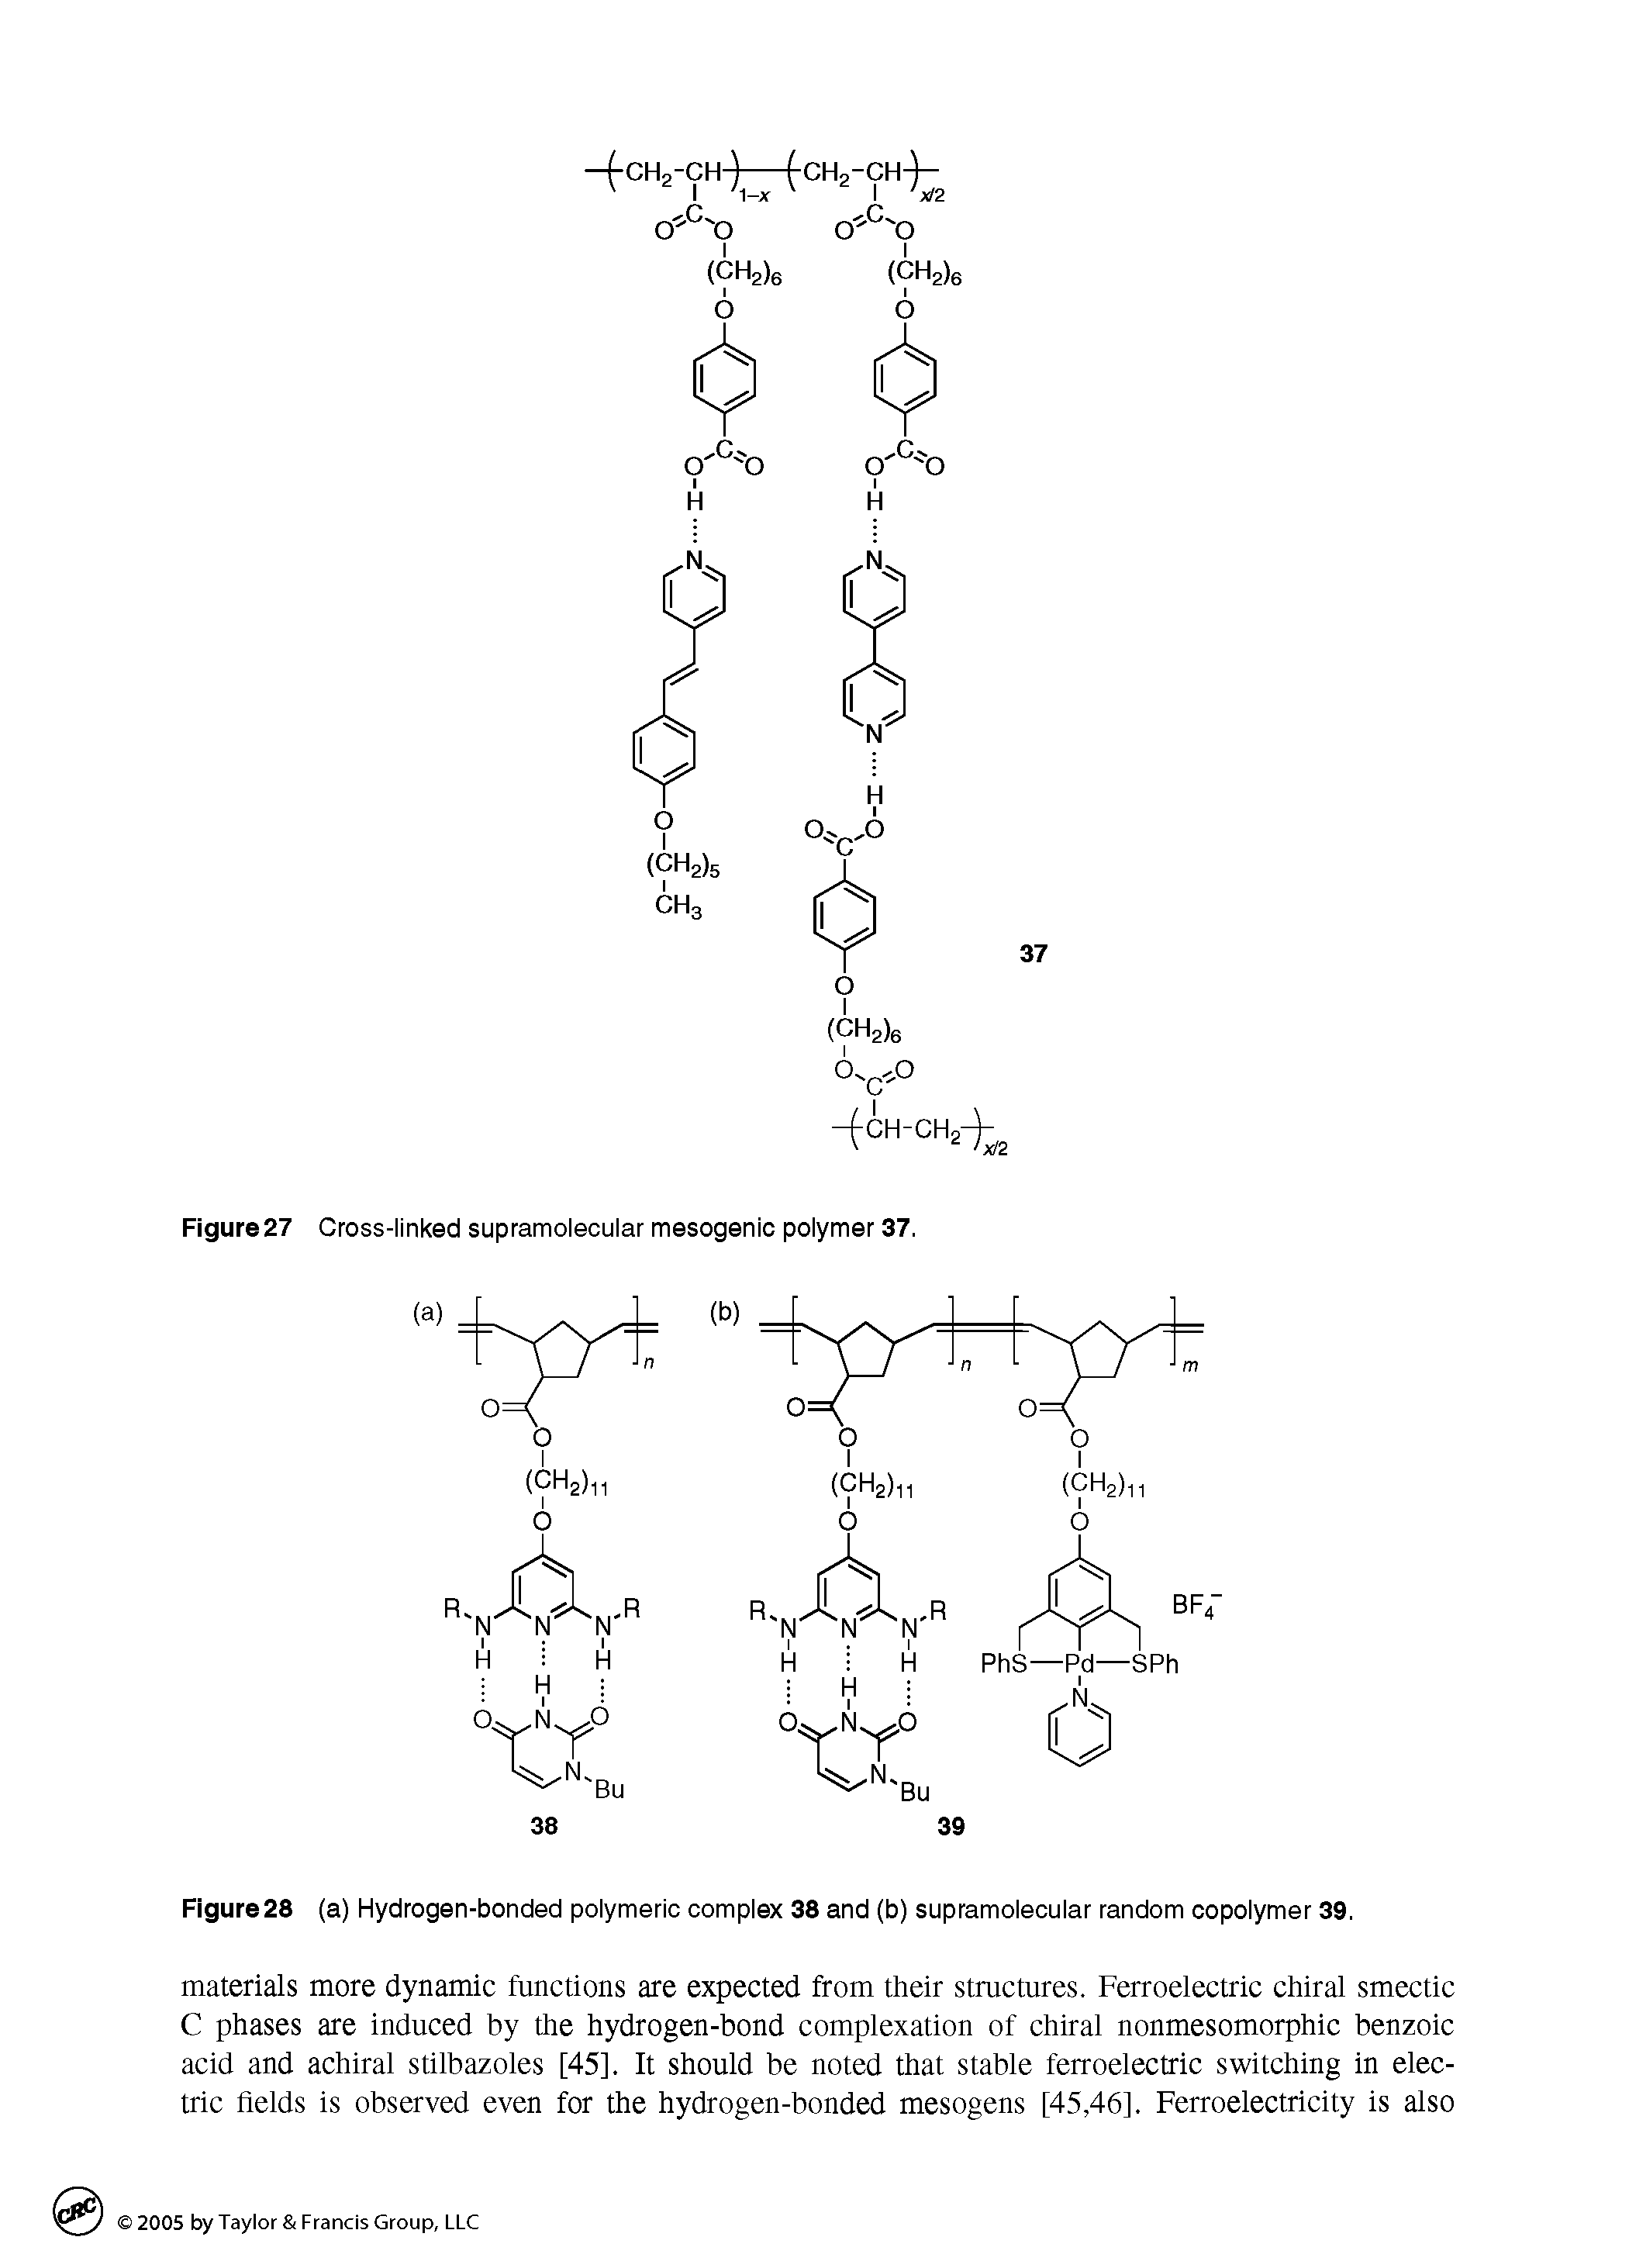 Figure28 (a) Hydrogen-bonded polymeric complex 38 and (b) supramolecular random copolymer 39.